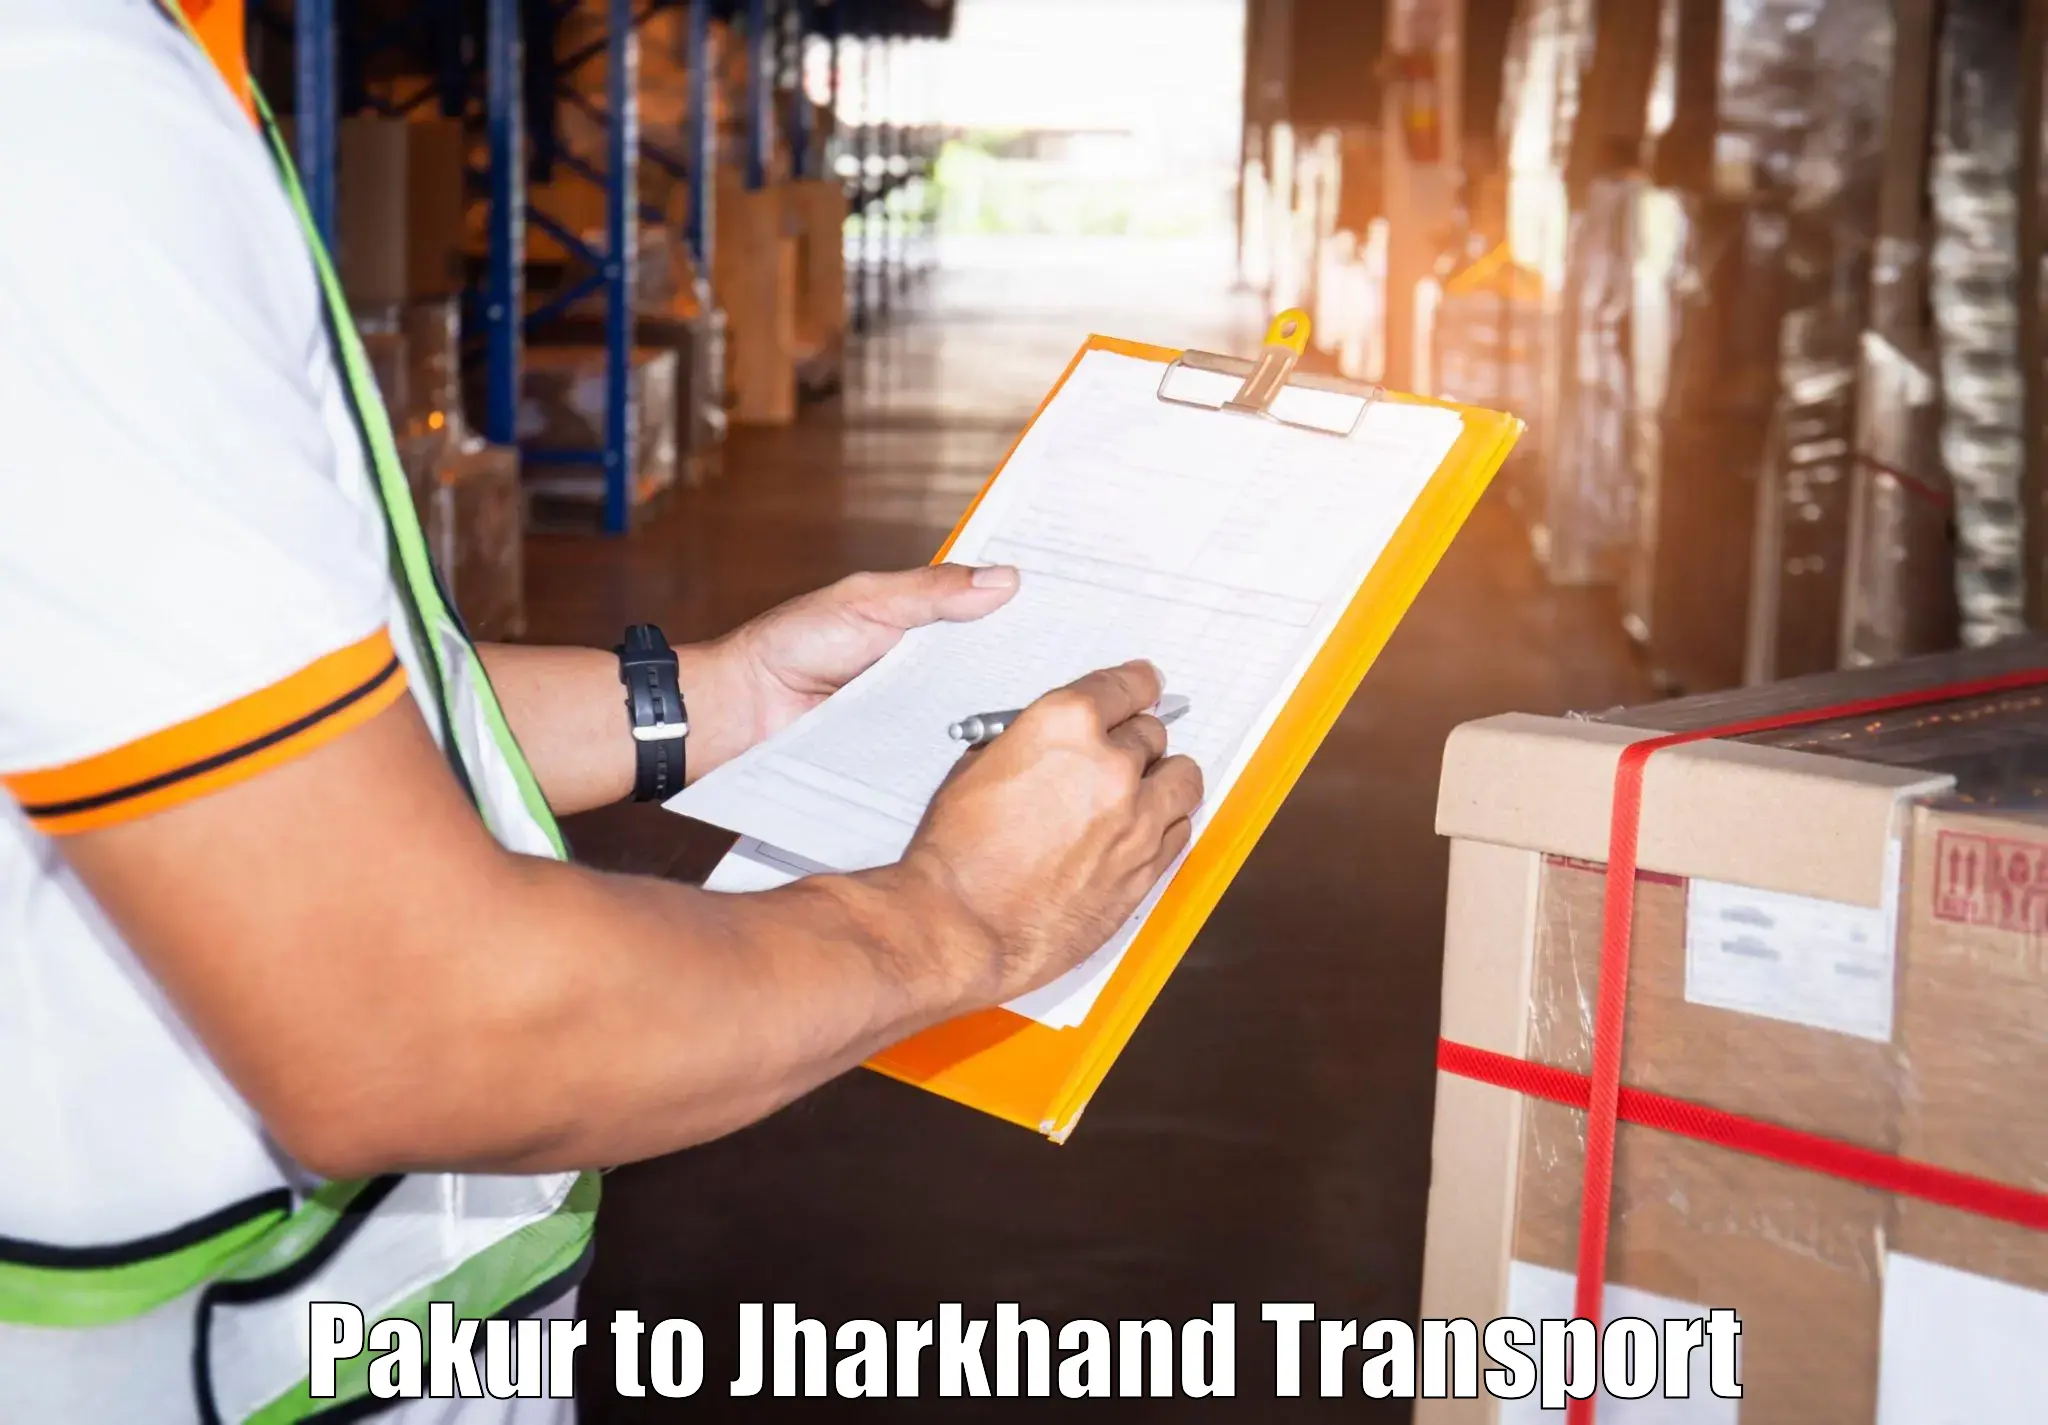 International cargo transportation services Pakur to Pakur